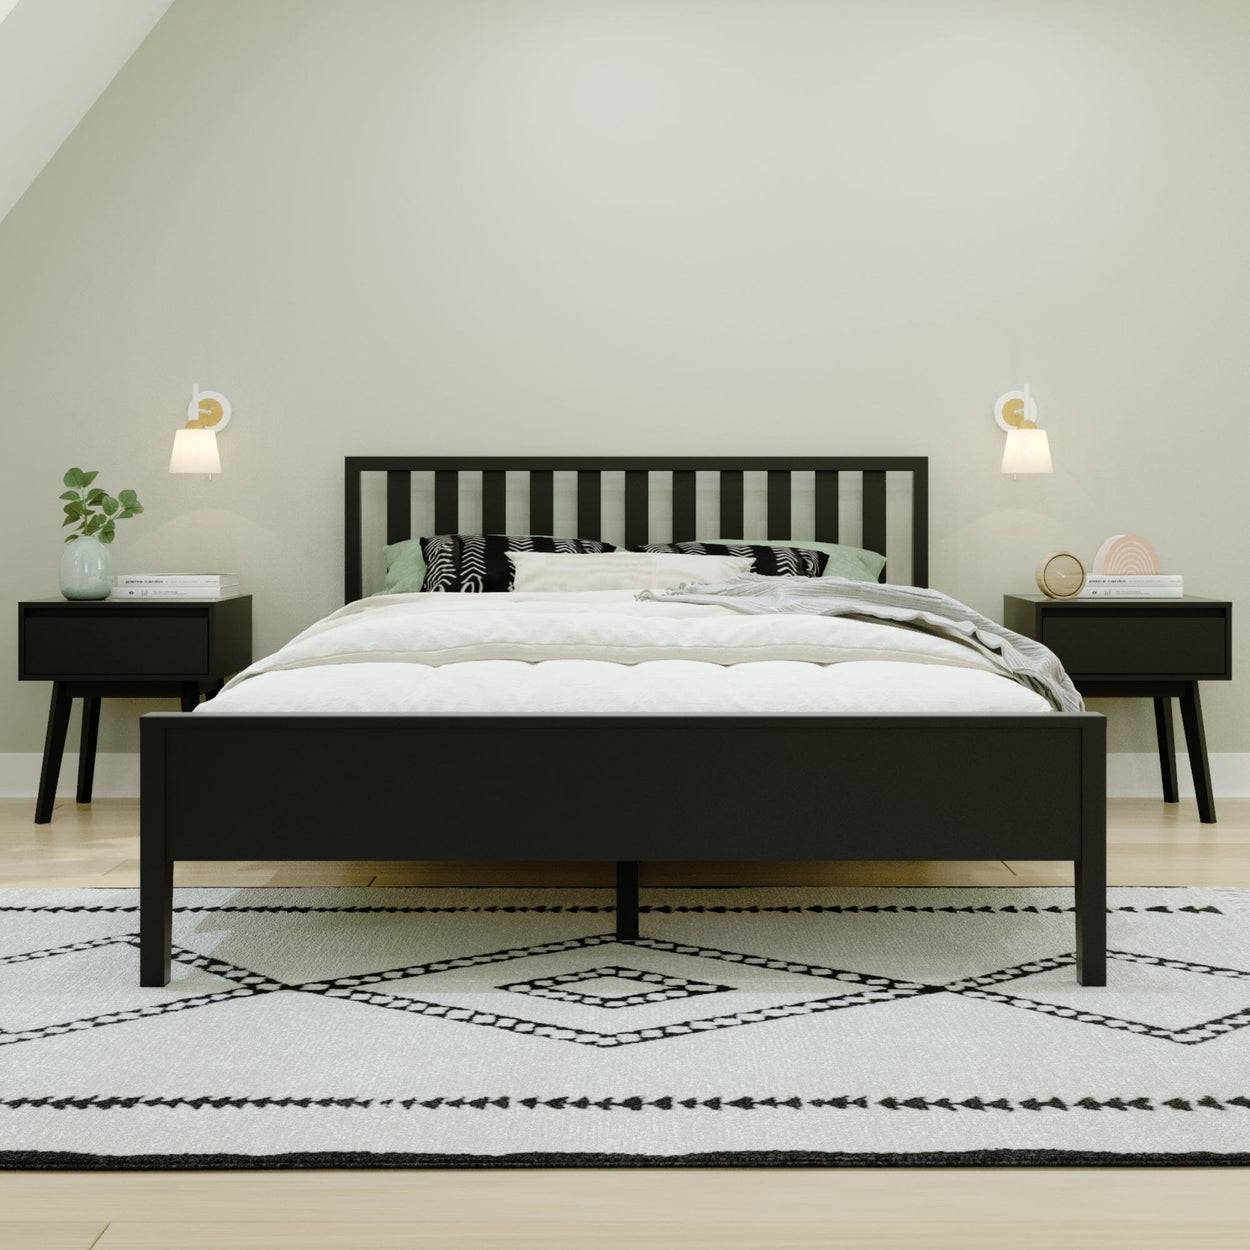 210312-170 : Kids Beds Scandinavian Queen-Size Bed with Slatted Headboard, Black